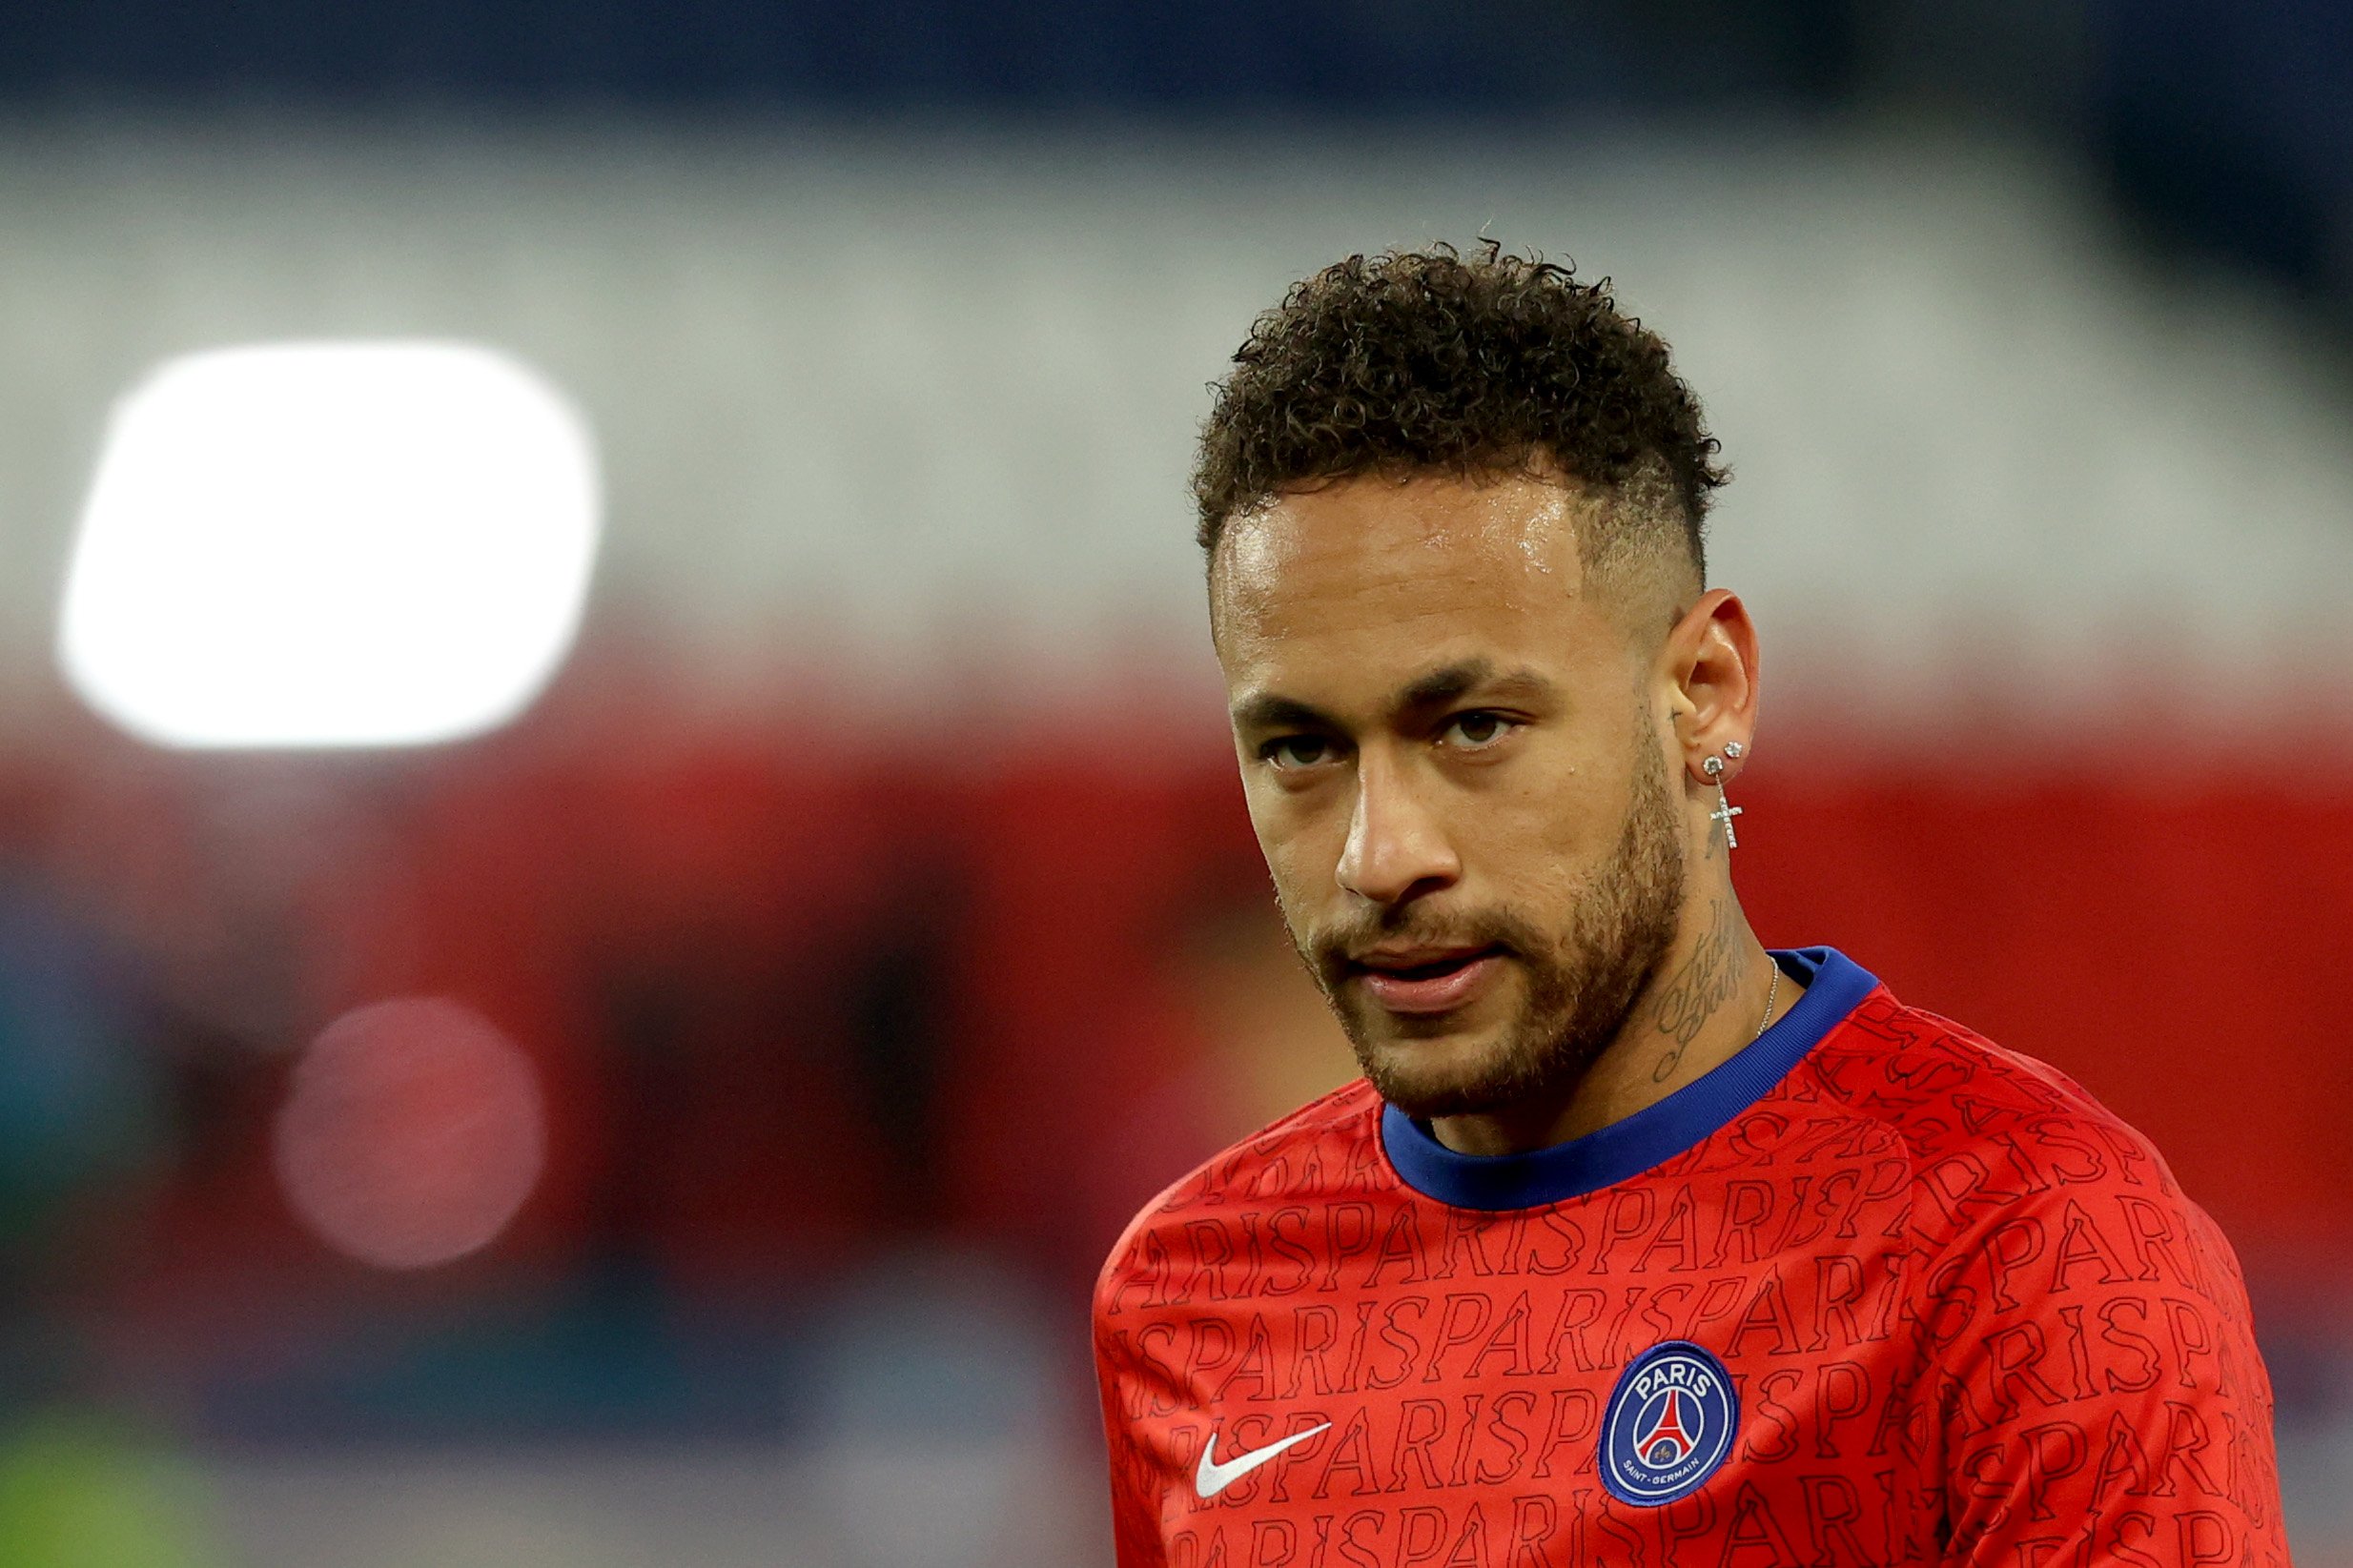 Les declaracions de Neymar que el tornen a allunyar del Barça